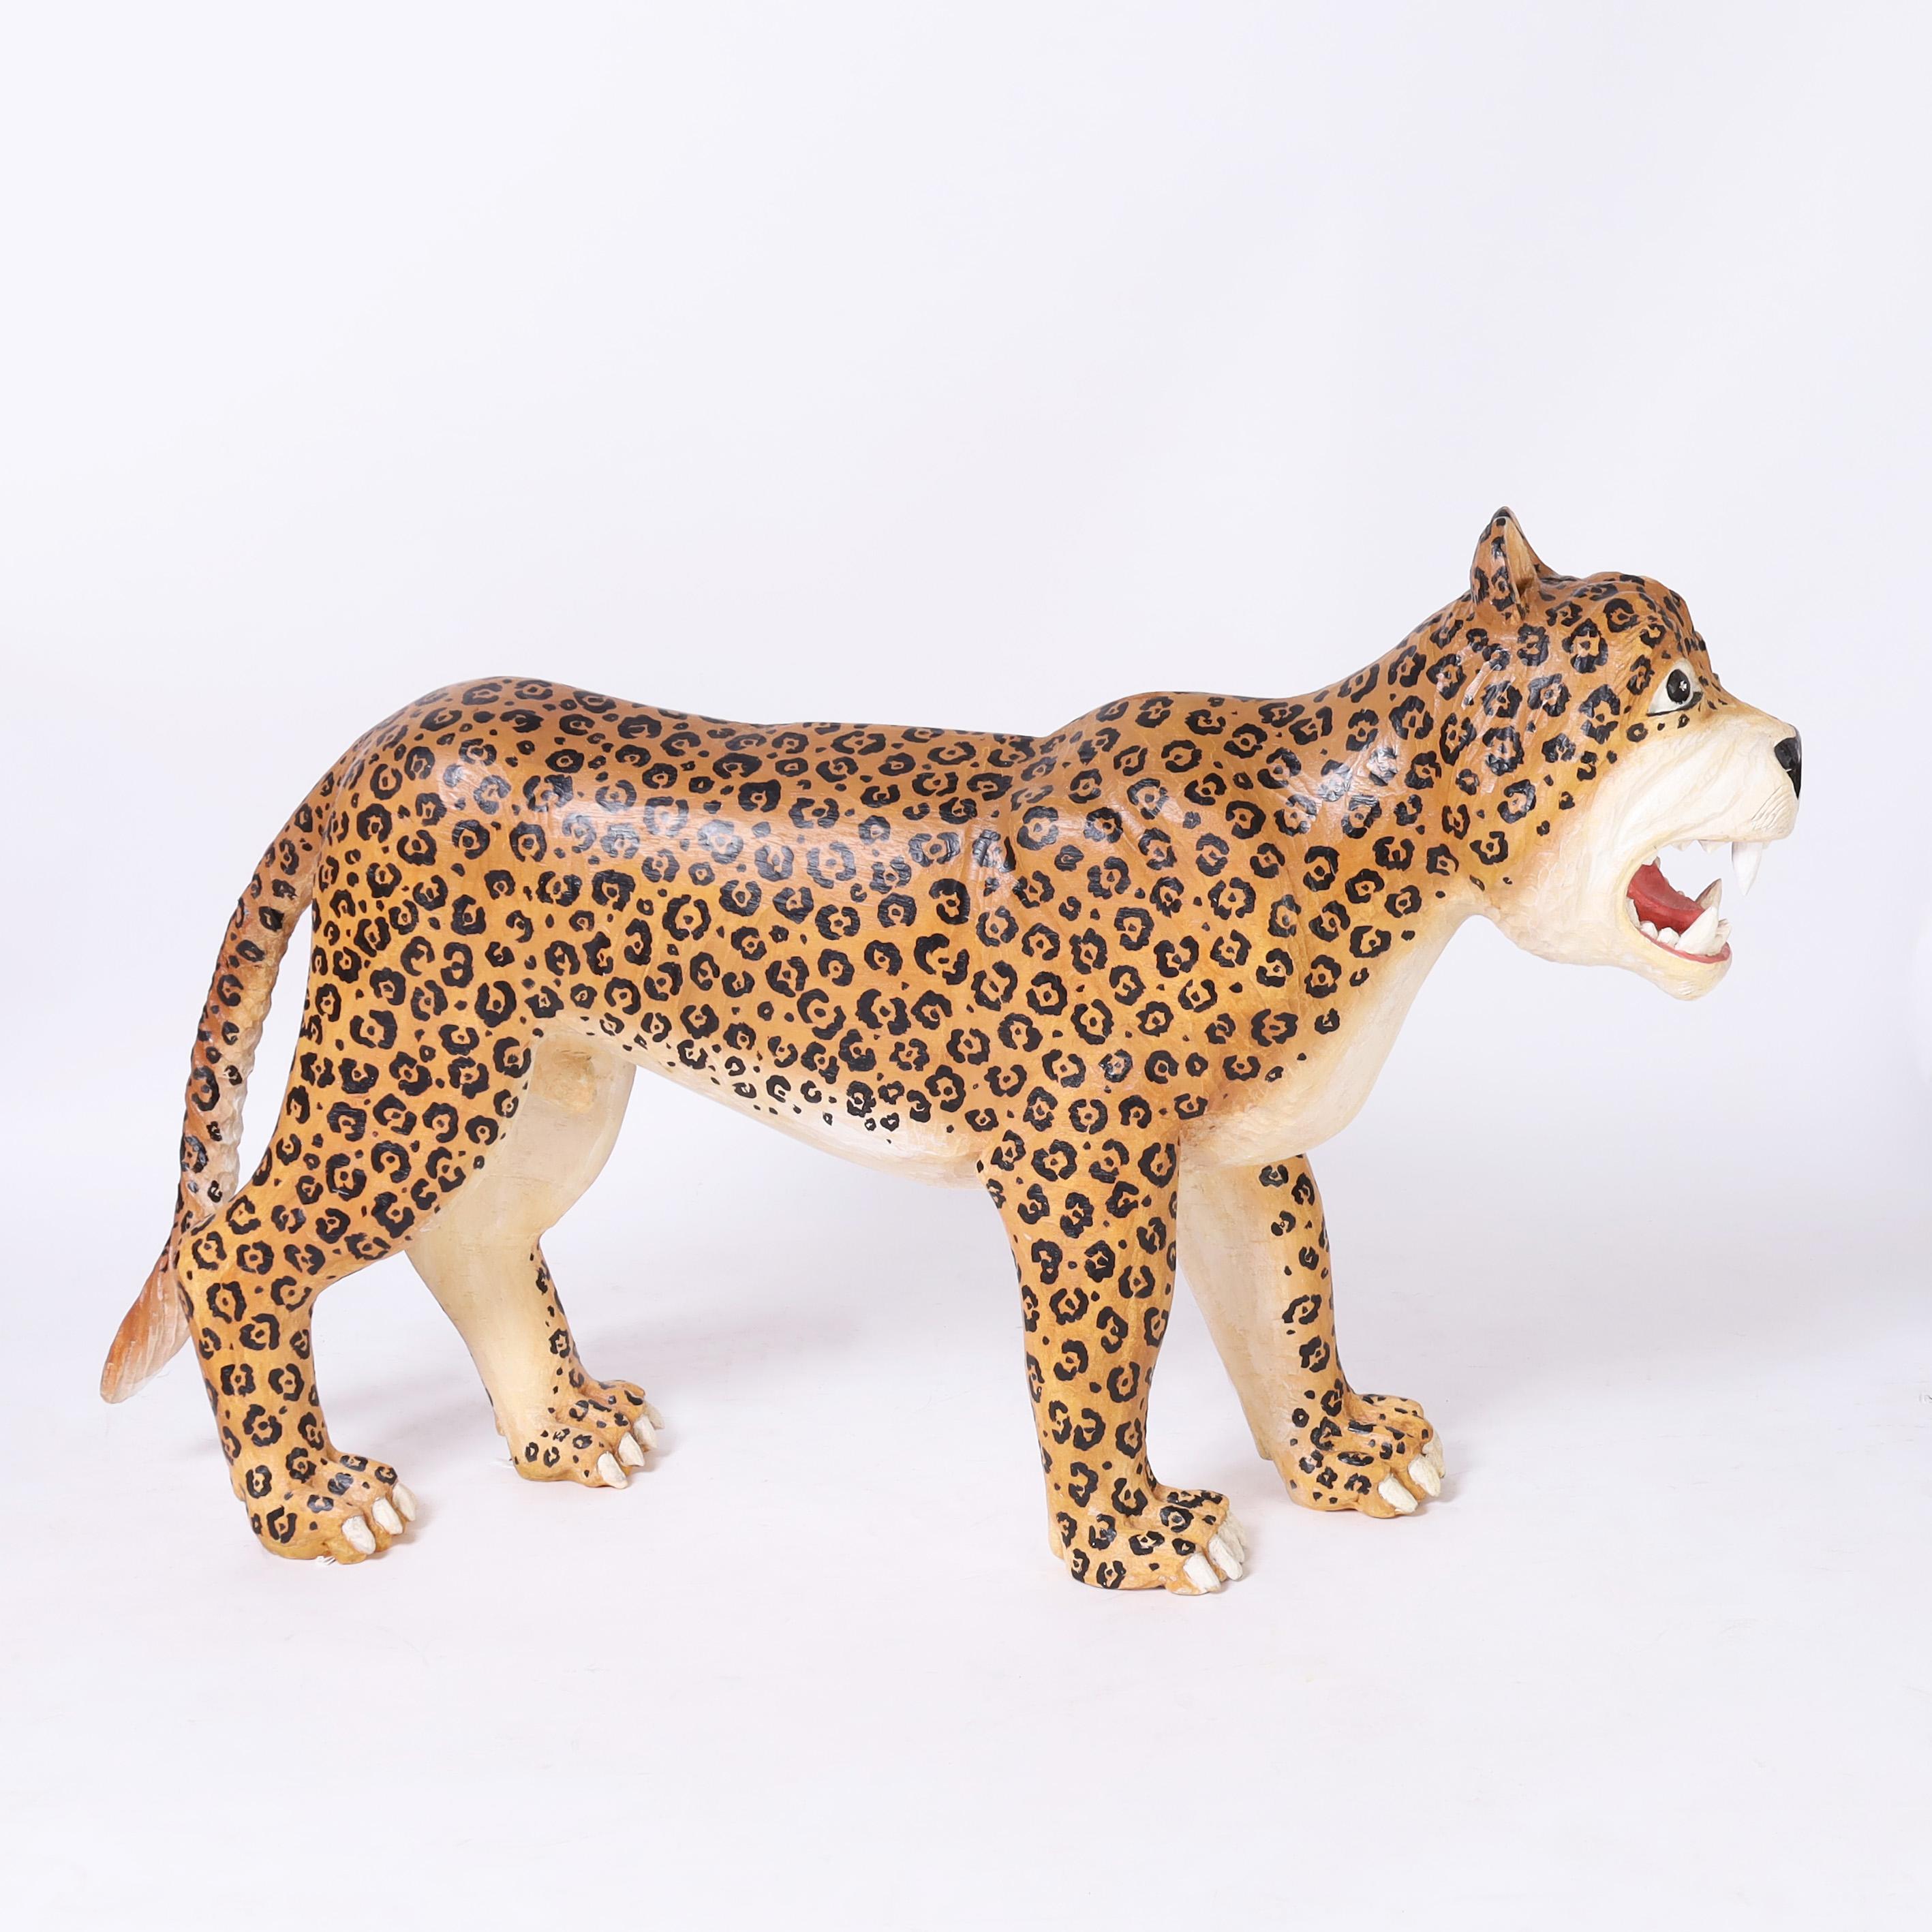 Ausgefallener, skurriler, handgeschnitzter Jaguar in Lebensgröße, verziert mit seinen unverwechselbaren Rosetten und einem fiktiven, grimmigen Ausdruck.